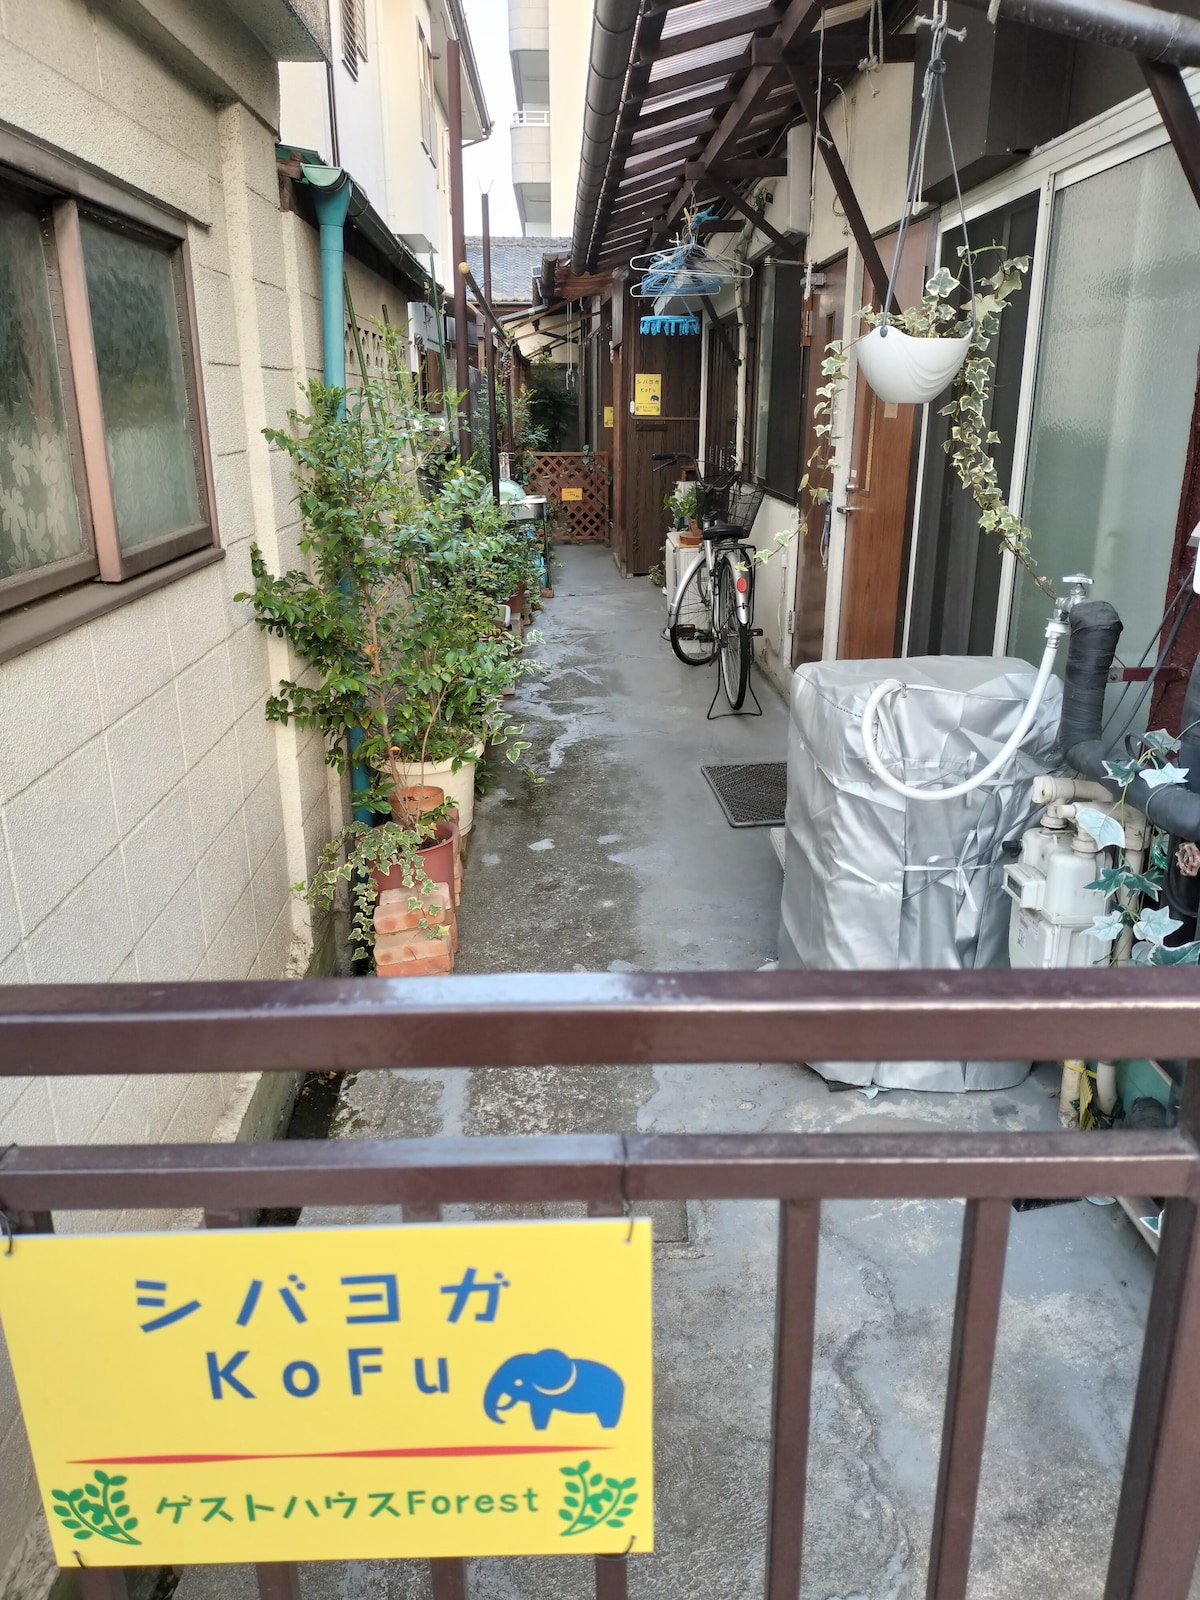 甲府駅から歩いて12分、武田通りにある便利なゲストハウスです。近くには温泉、富士山、河口湖、舞鶴城